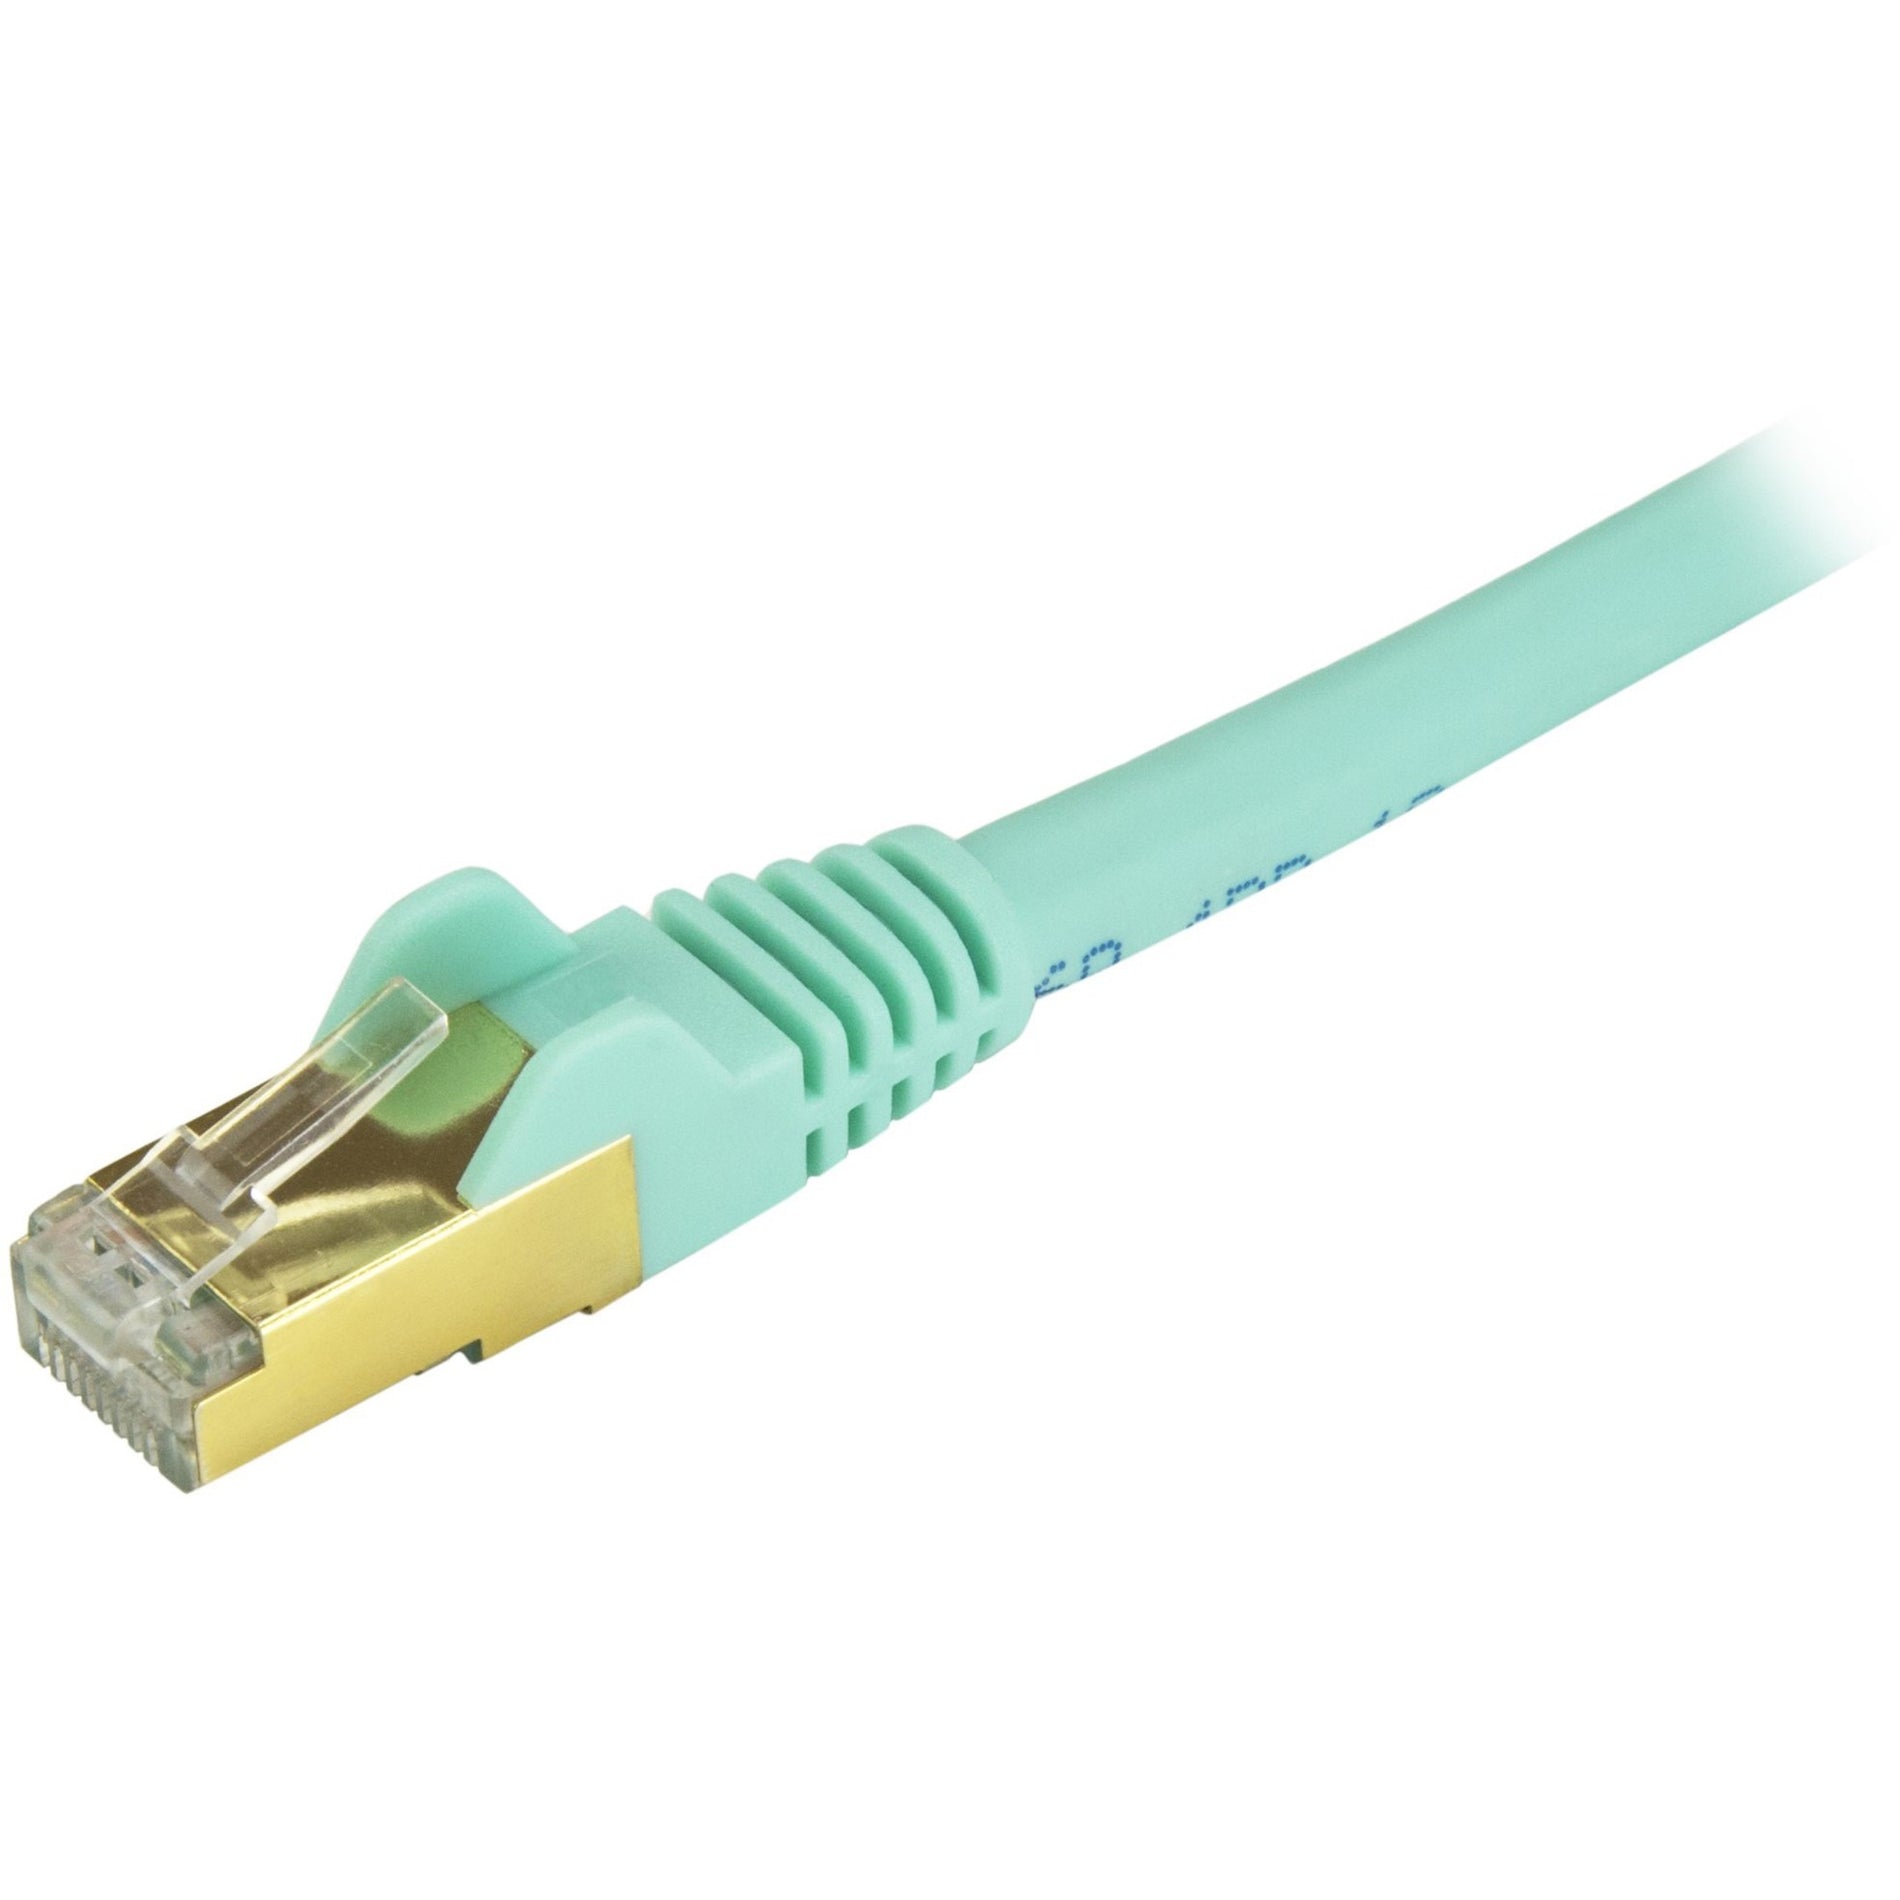 StarTech.com C6ASPAT9AQ Cable de parche Ethernet Cat6a - Blindado (STP) - 9 pies Aqua Cordón Ethernet RJ45 sin enganches. Traduce: Shielded Aqua y Snagless. Marca: StarTech.com - Traducción: EstrellaTécnica.com